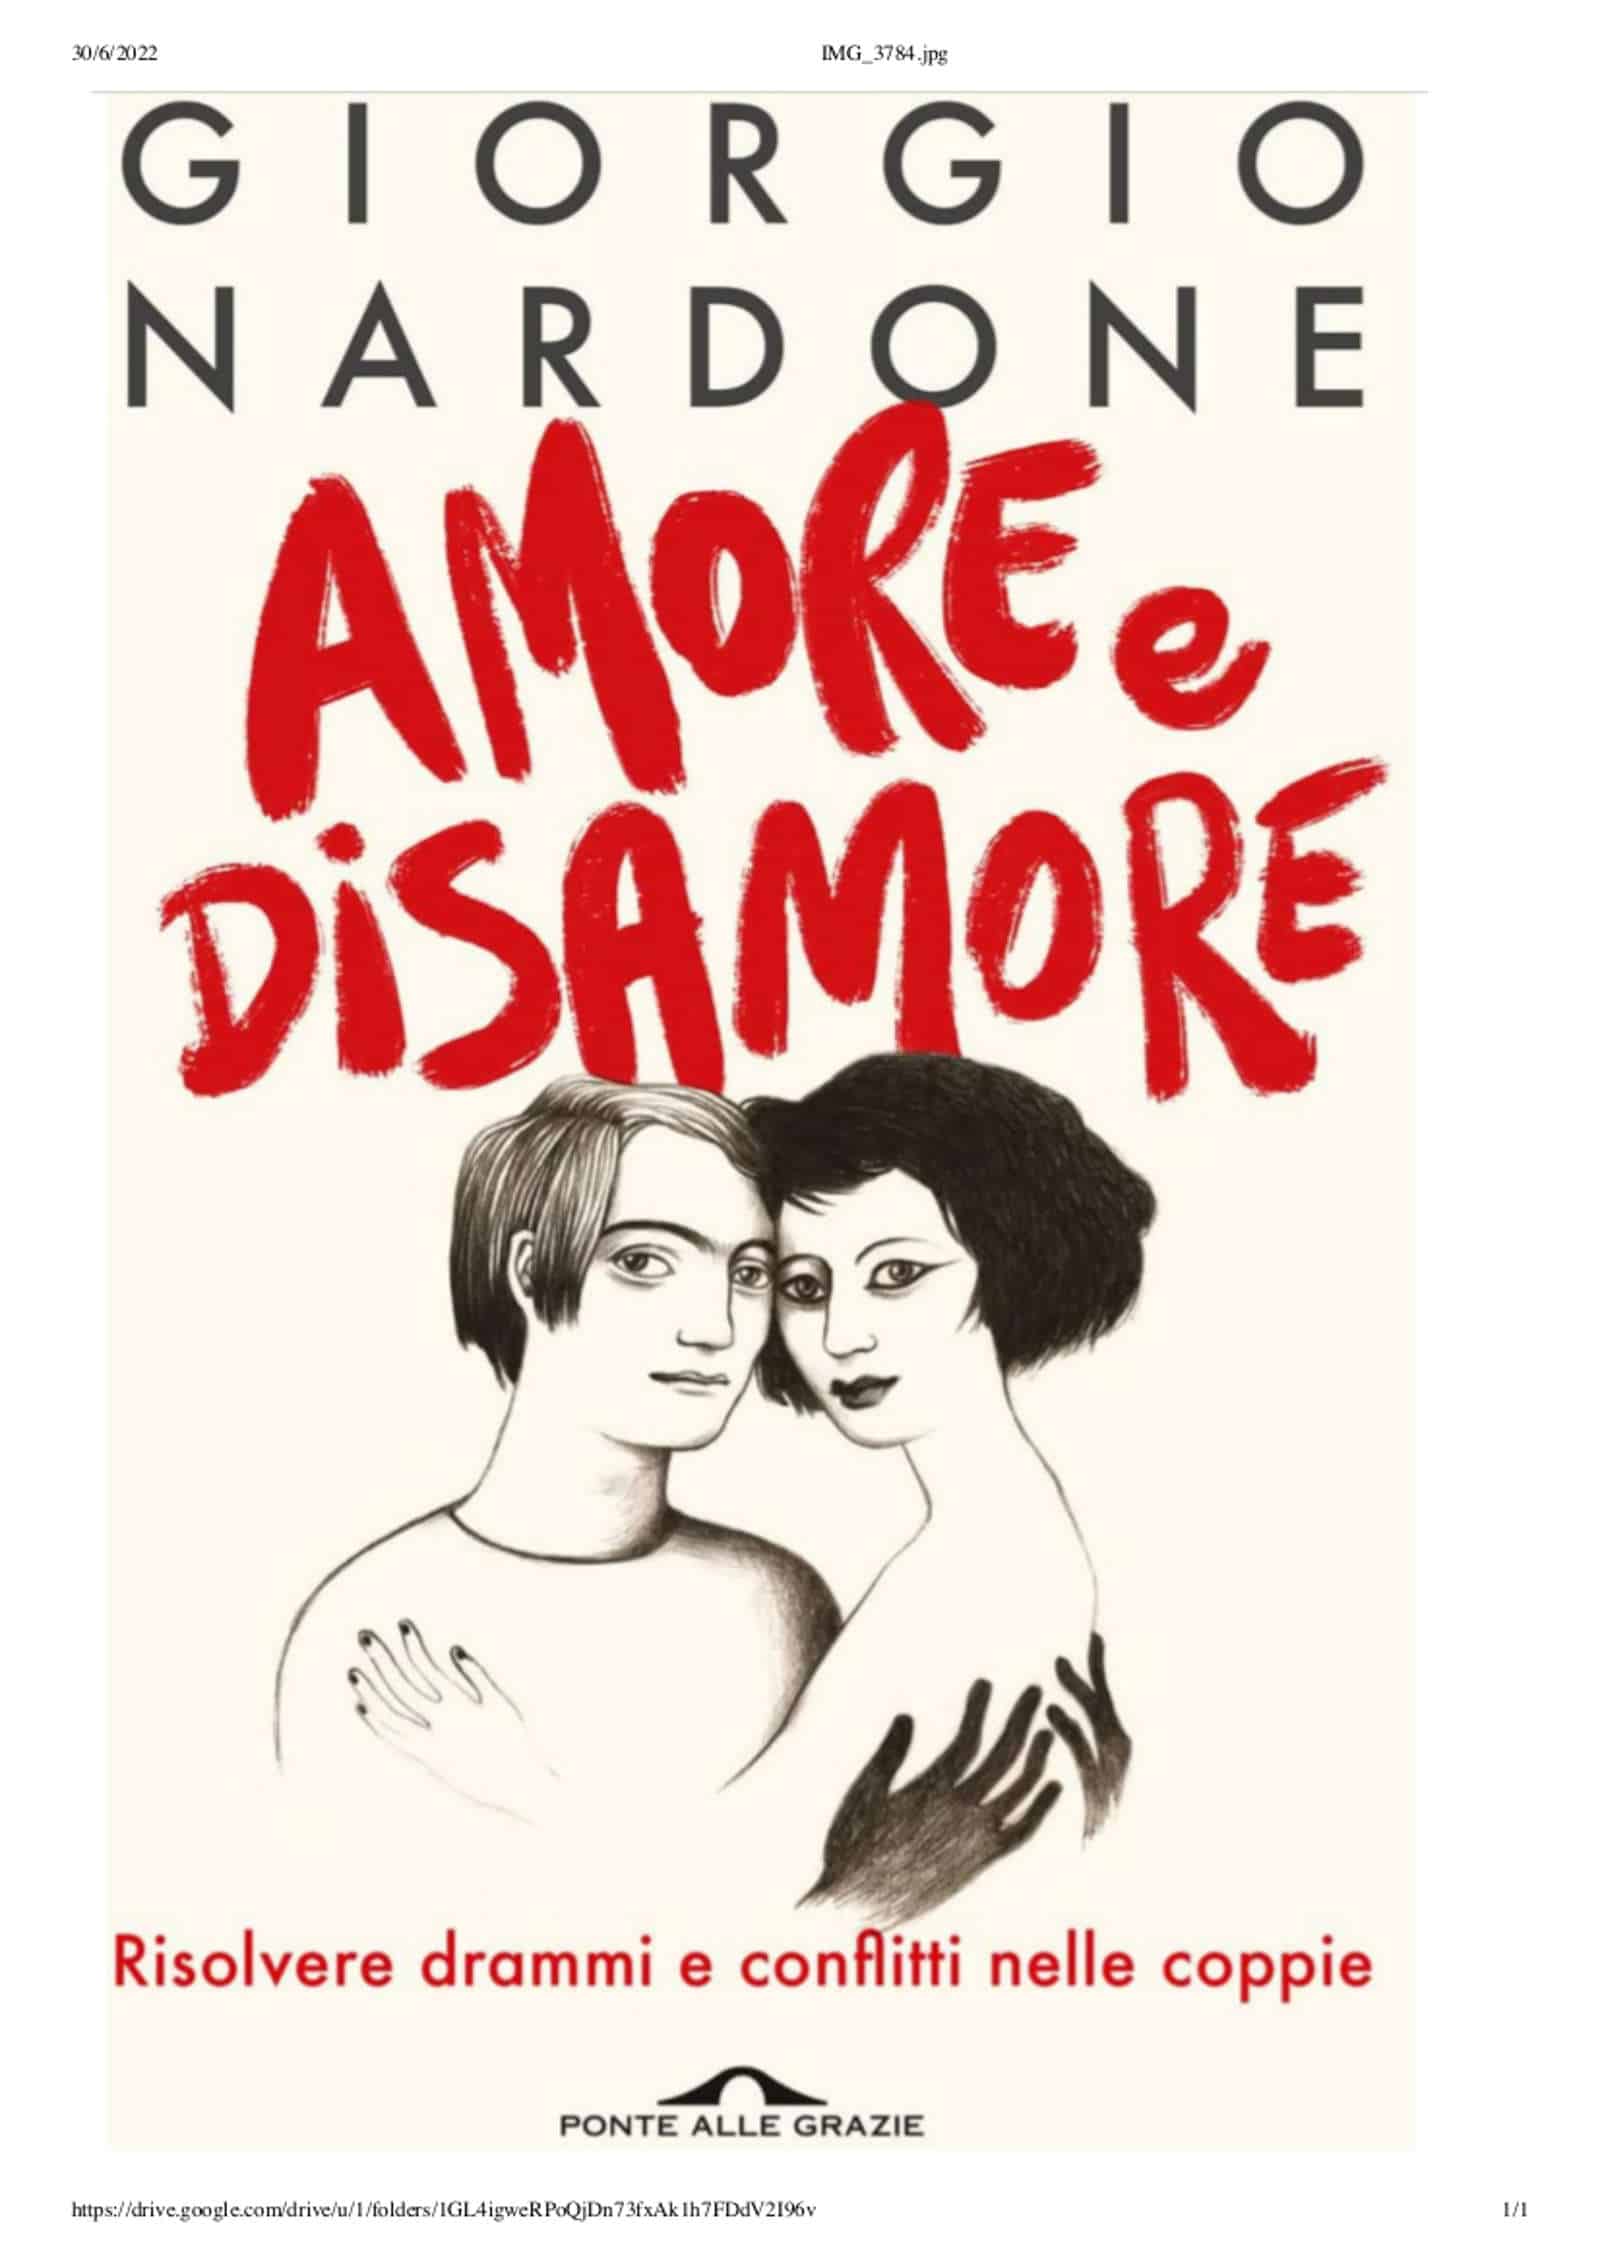 Amore e disamore (2022) di Giorgio Nardone – Recensione